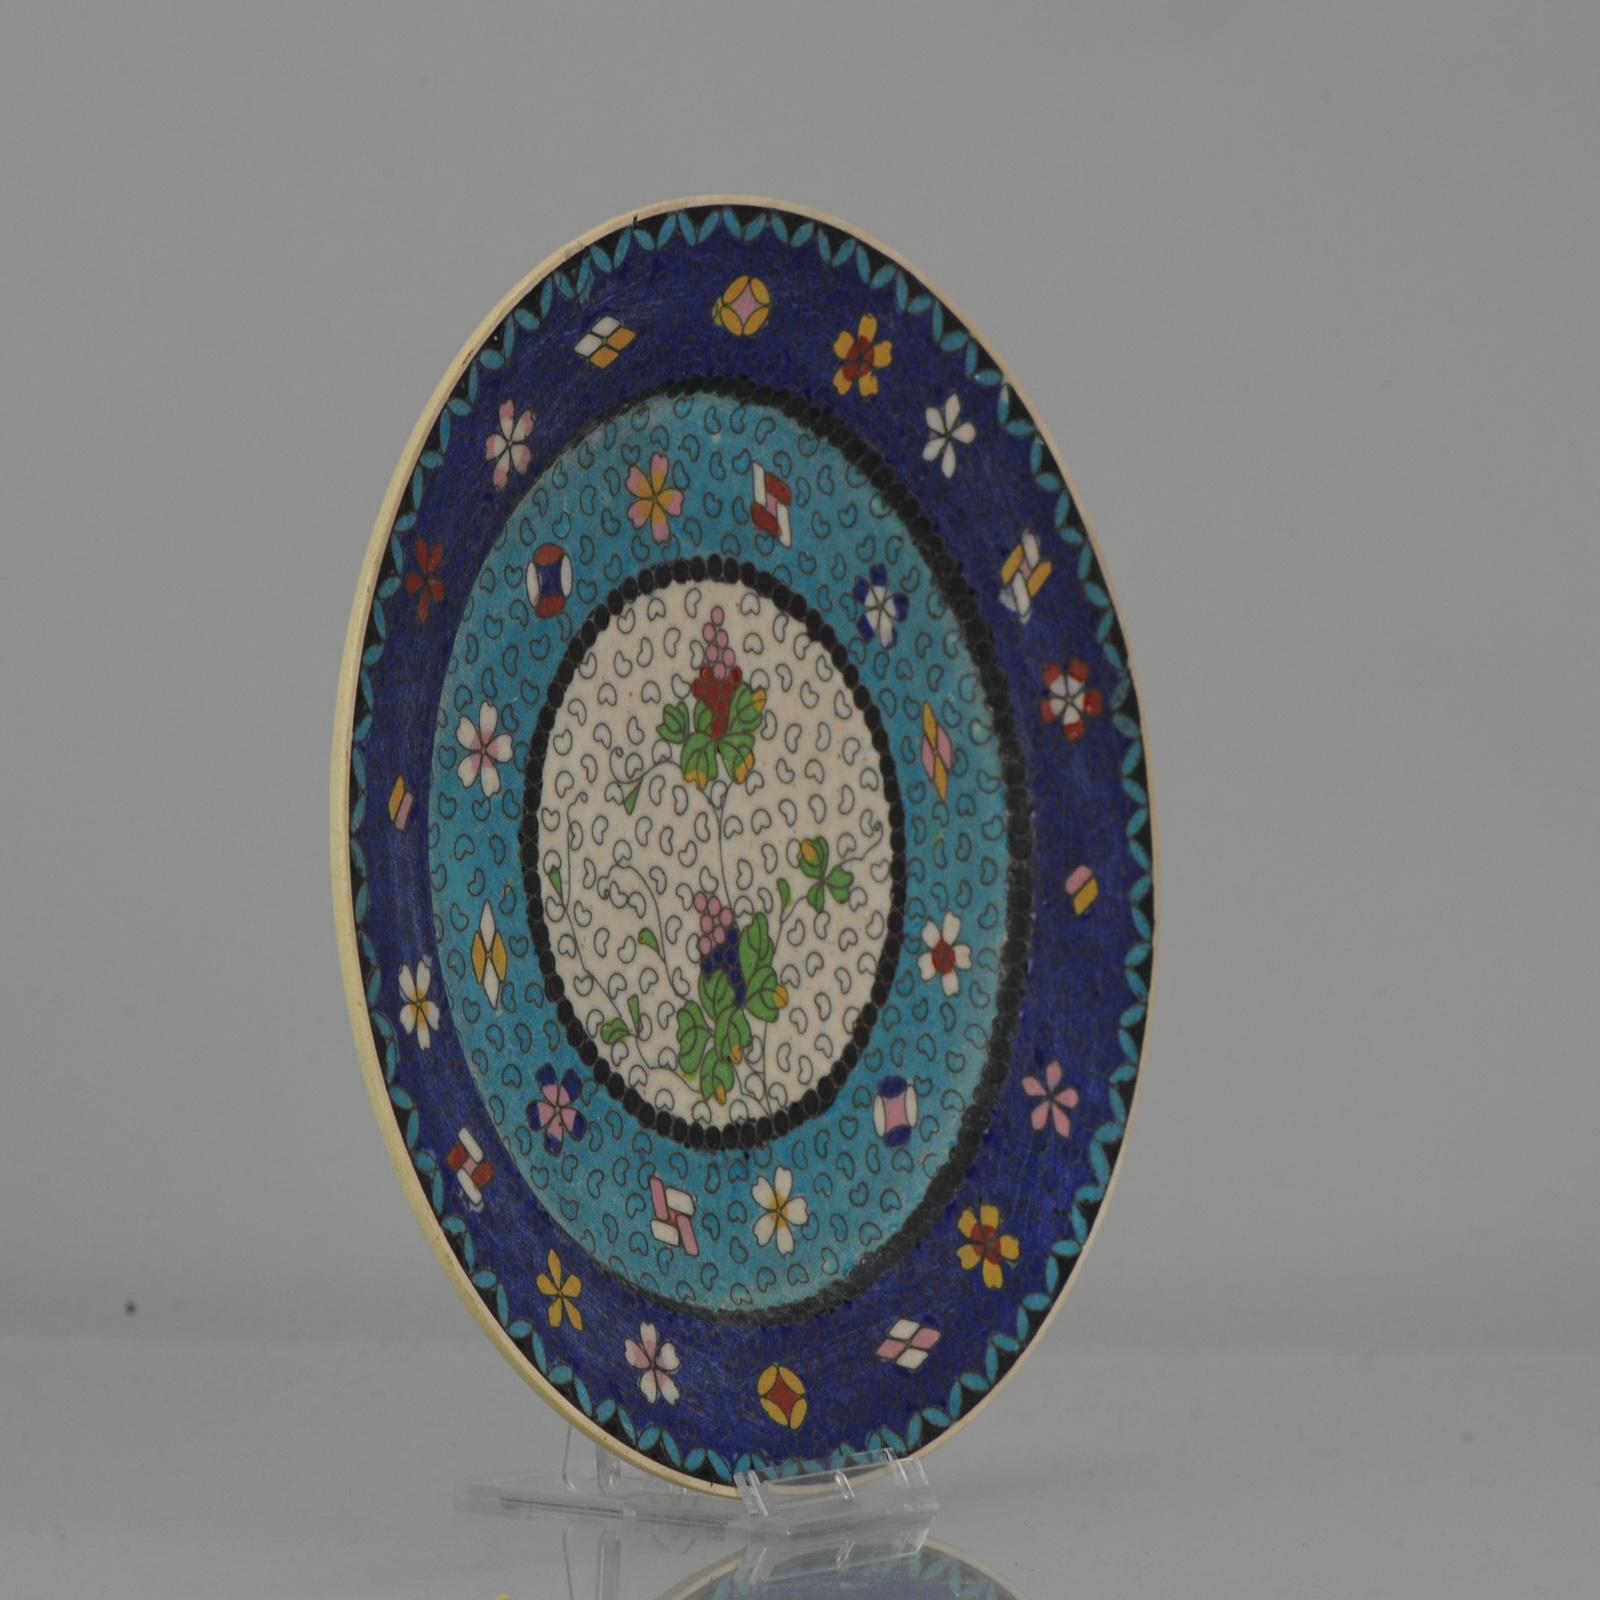 Japanischer Totai Shippo Cloisonne-Teller (Cloisonné) aus Keramik. Der Teller hat den üblichen cremefarbenen Scherben, der normalerweise mit Satsuma-Ware in Verbindung gebracht wird. Es ist mit einer großen Anzahl von kleinen Messingkloben (Drähten)